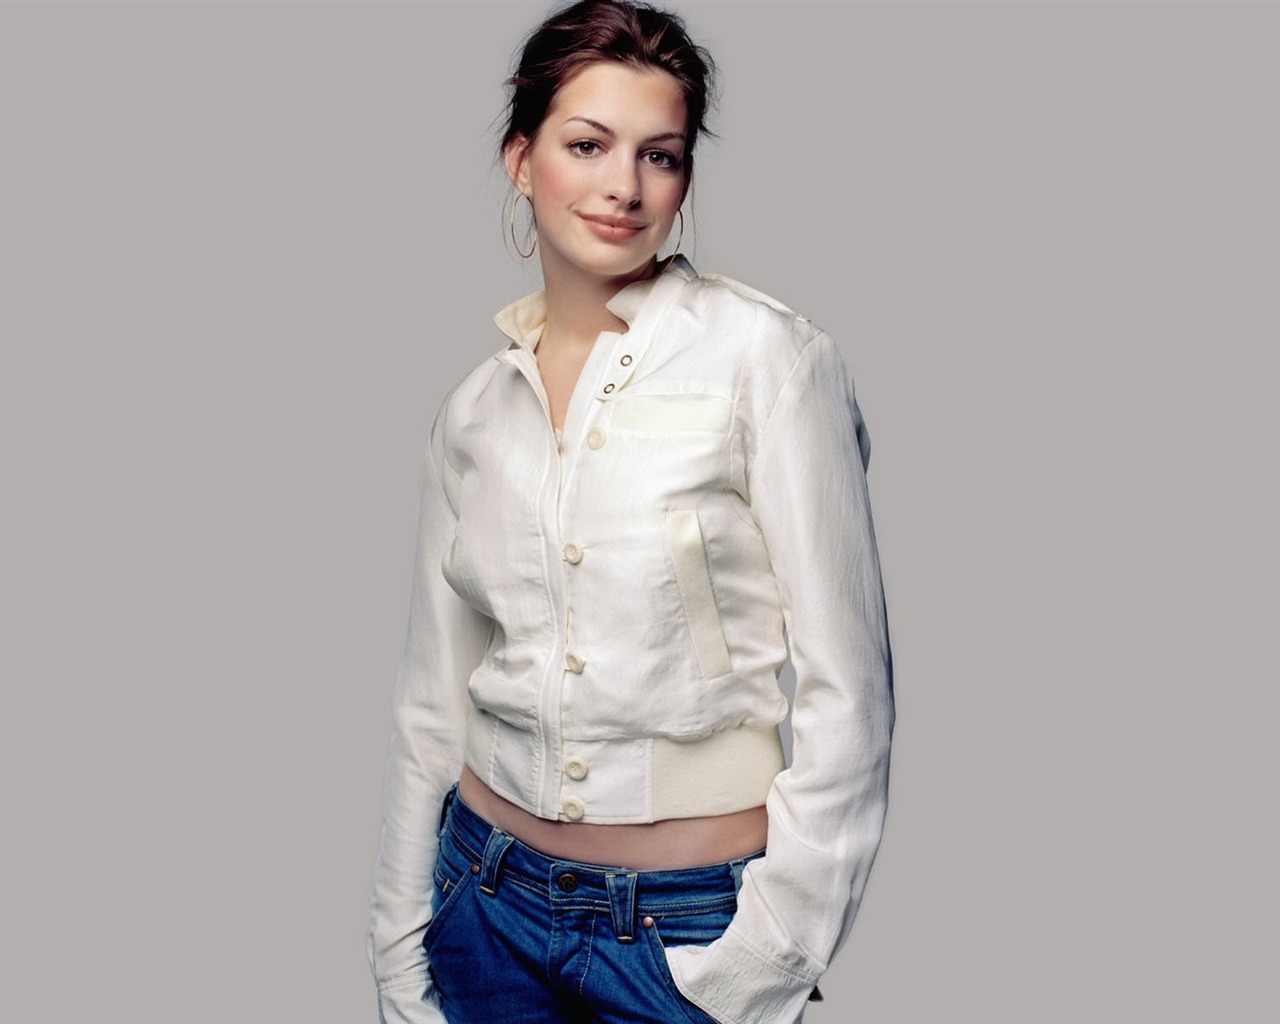 Anne Hathaway 安妮·海瑟薇 美女壁纸(二)15 - 1280x1024